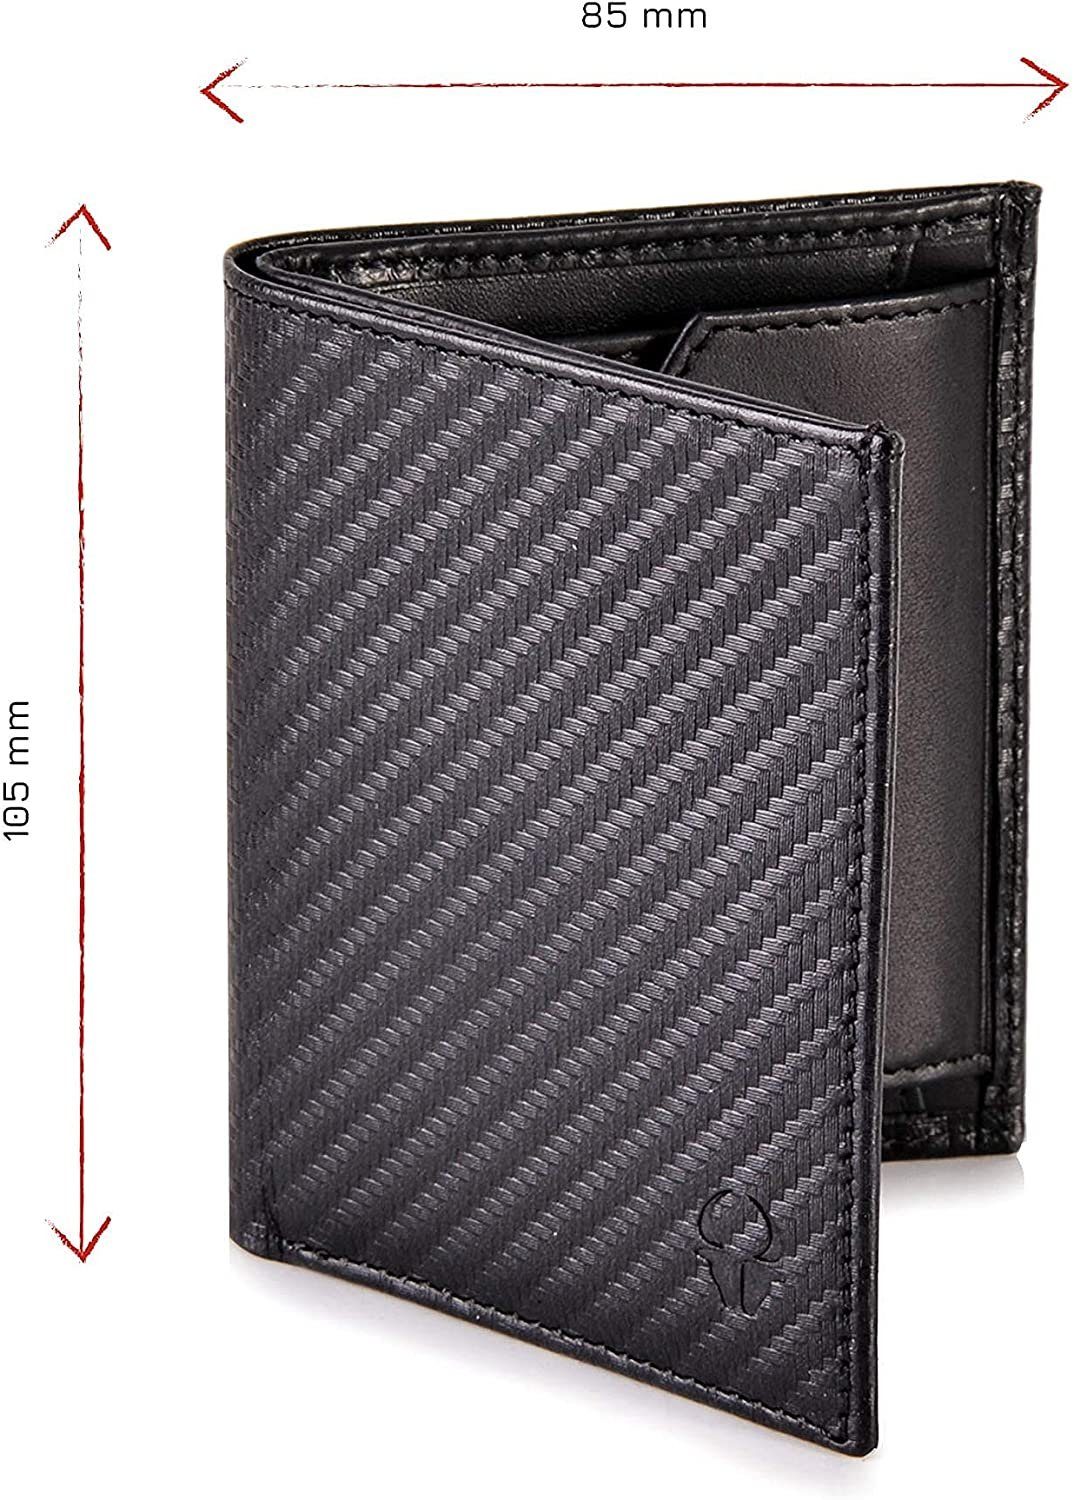 Donbolso Mini Geldbörse Slim Wallet Mit 6 Mnzfachvintage RFID Echtleder Geldbeutel Kartenfächer, Schutz Schwarz Vintage